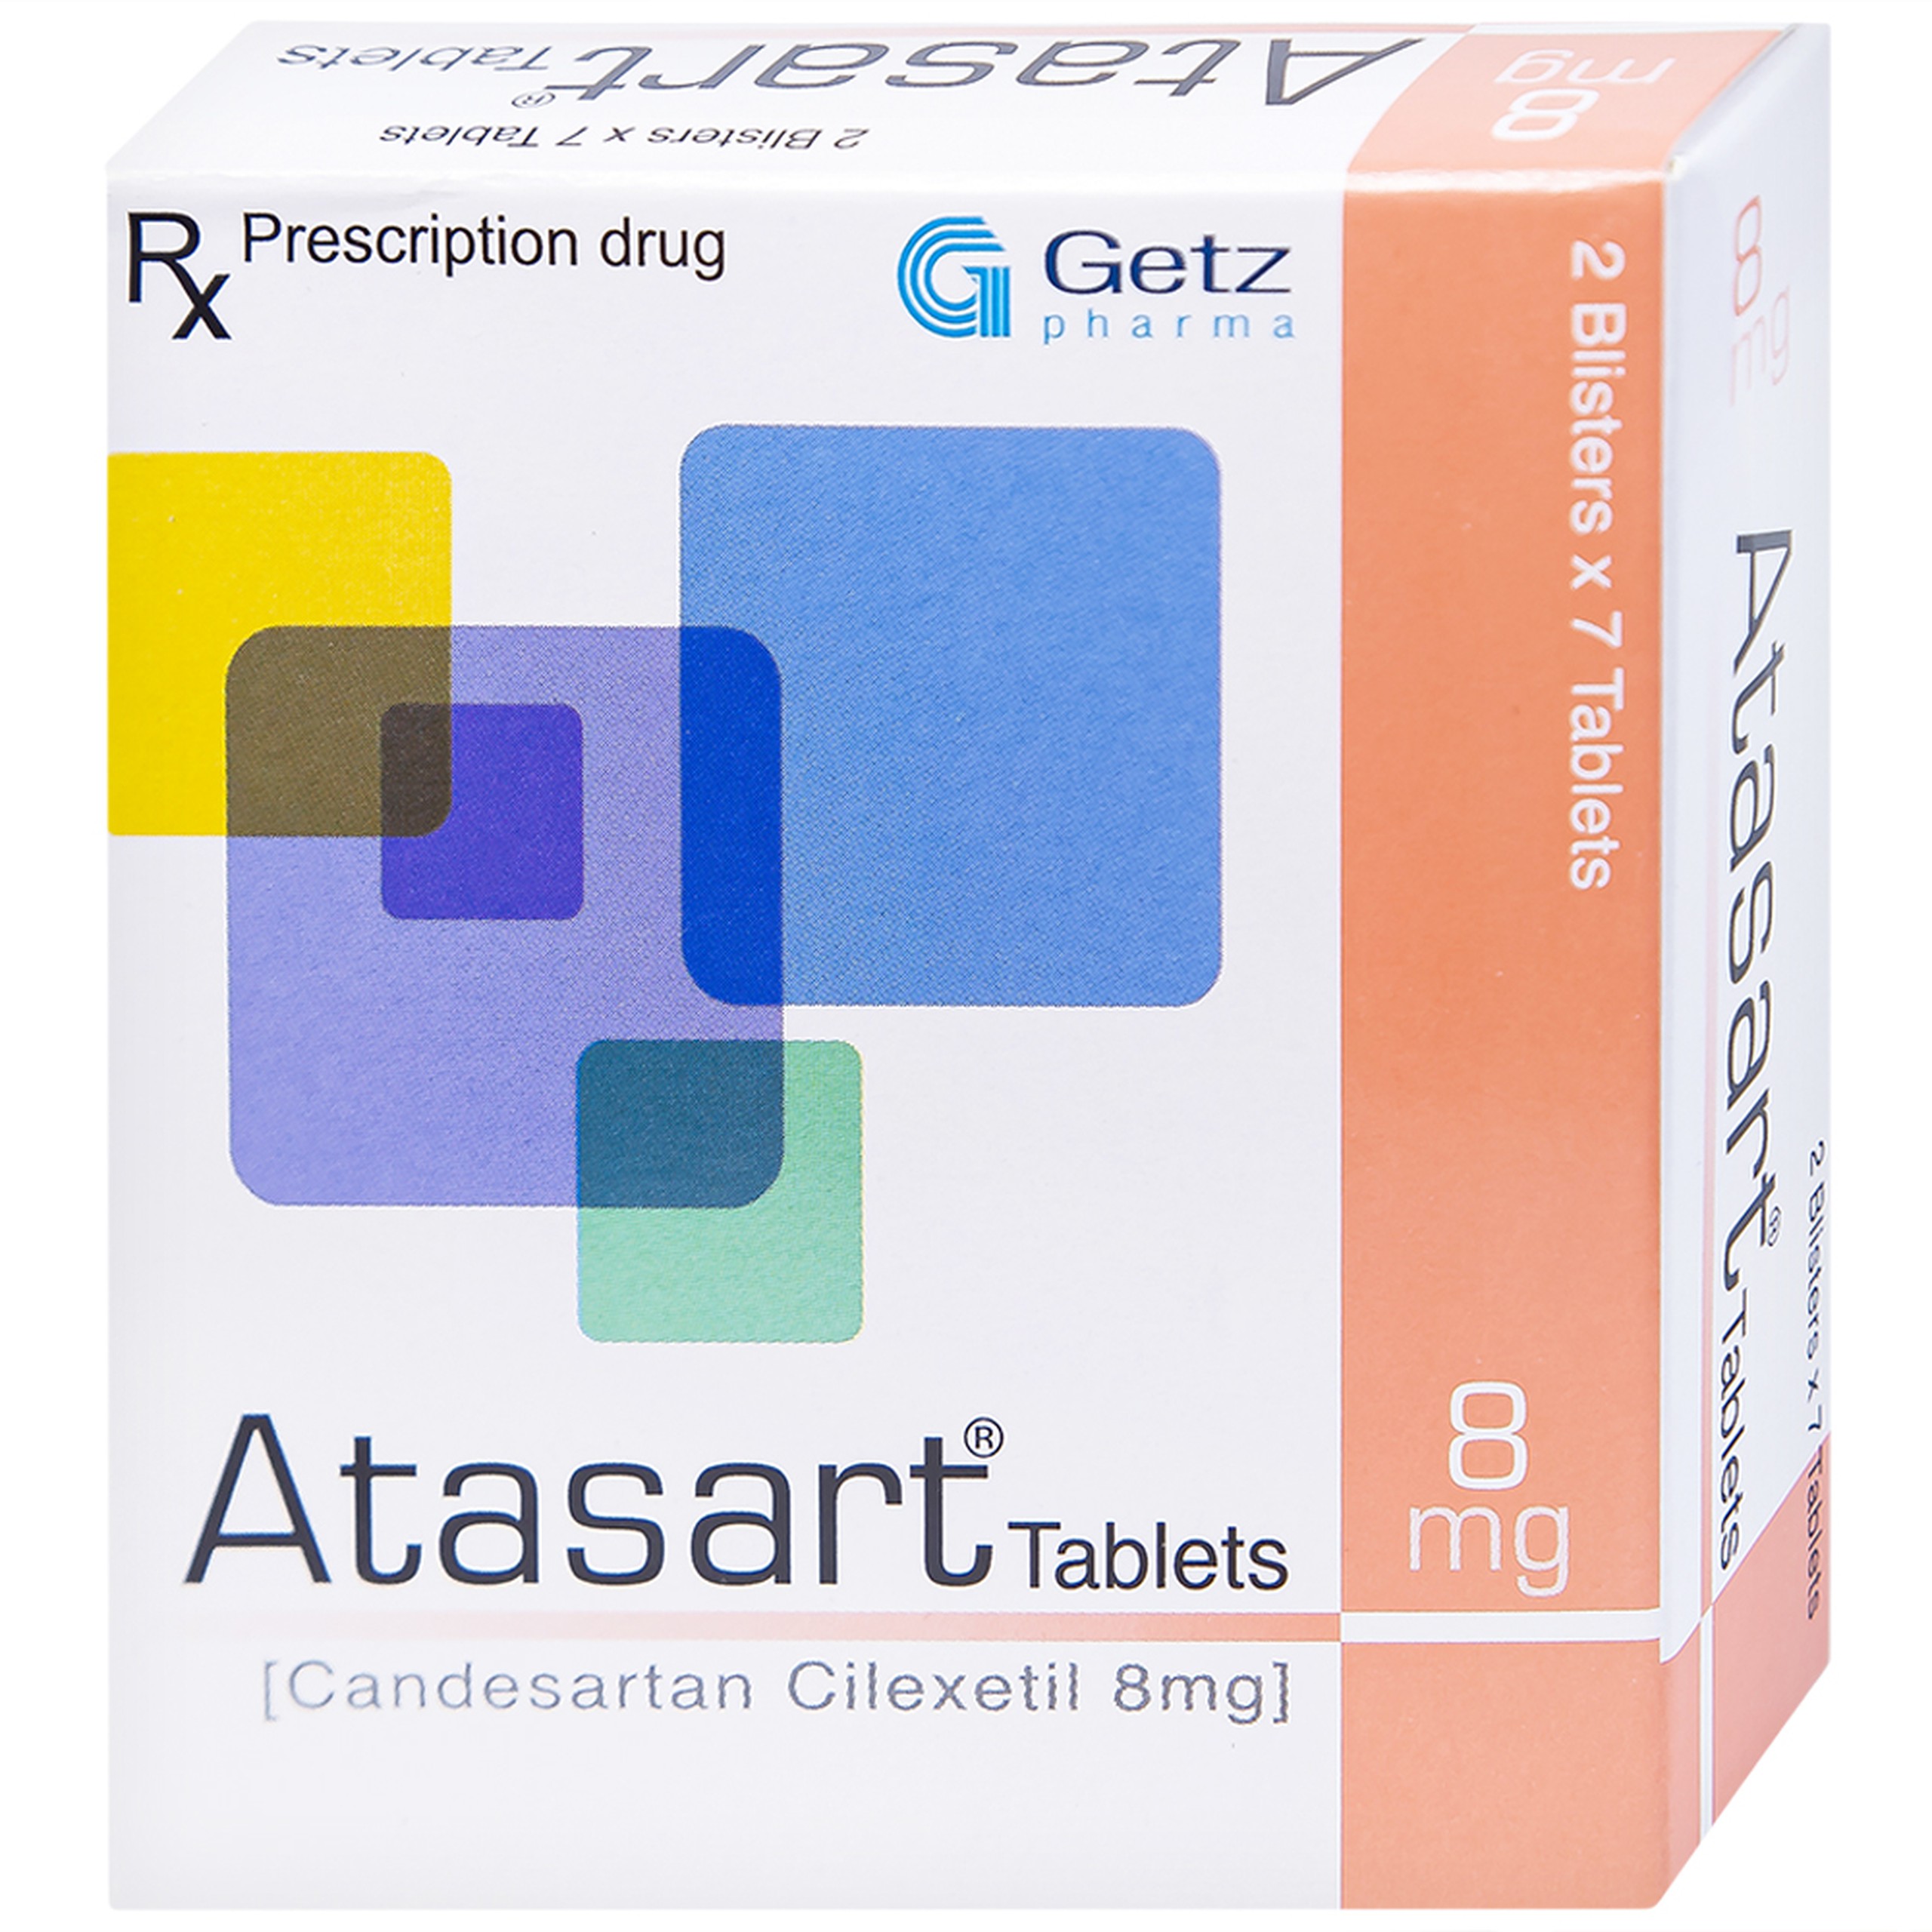 Thuốc Atasart Tablets 8mg Getz điều trị tăng huyết áp (2 vỉ x 7 viên)